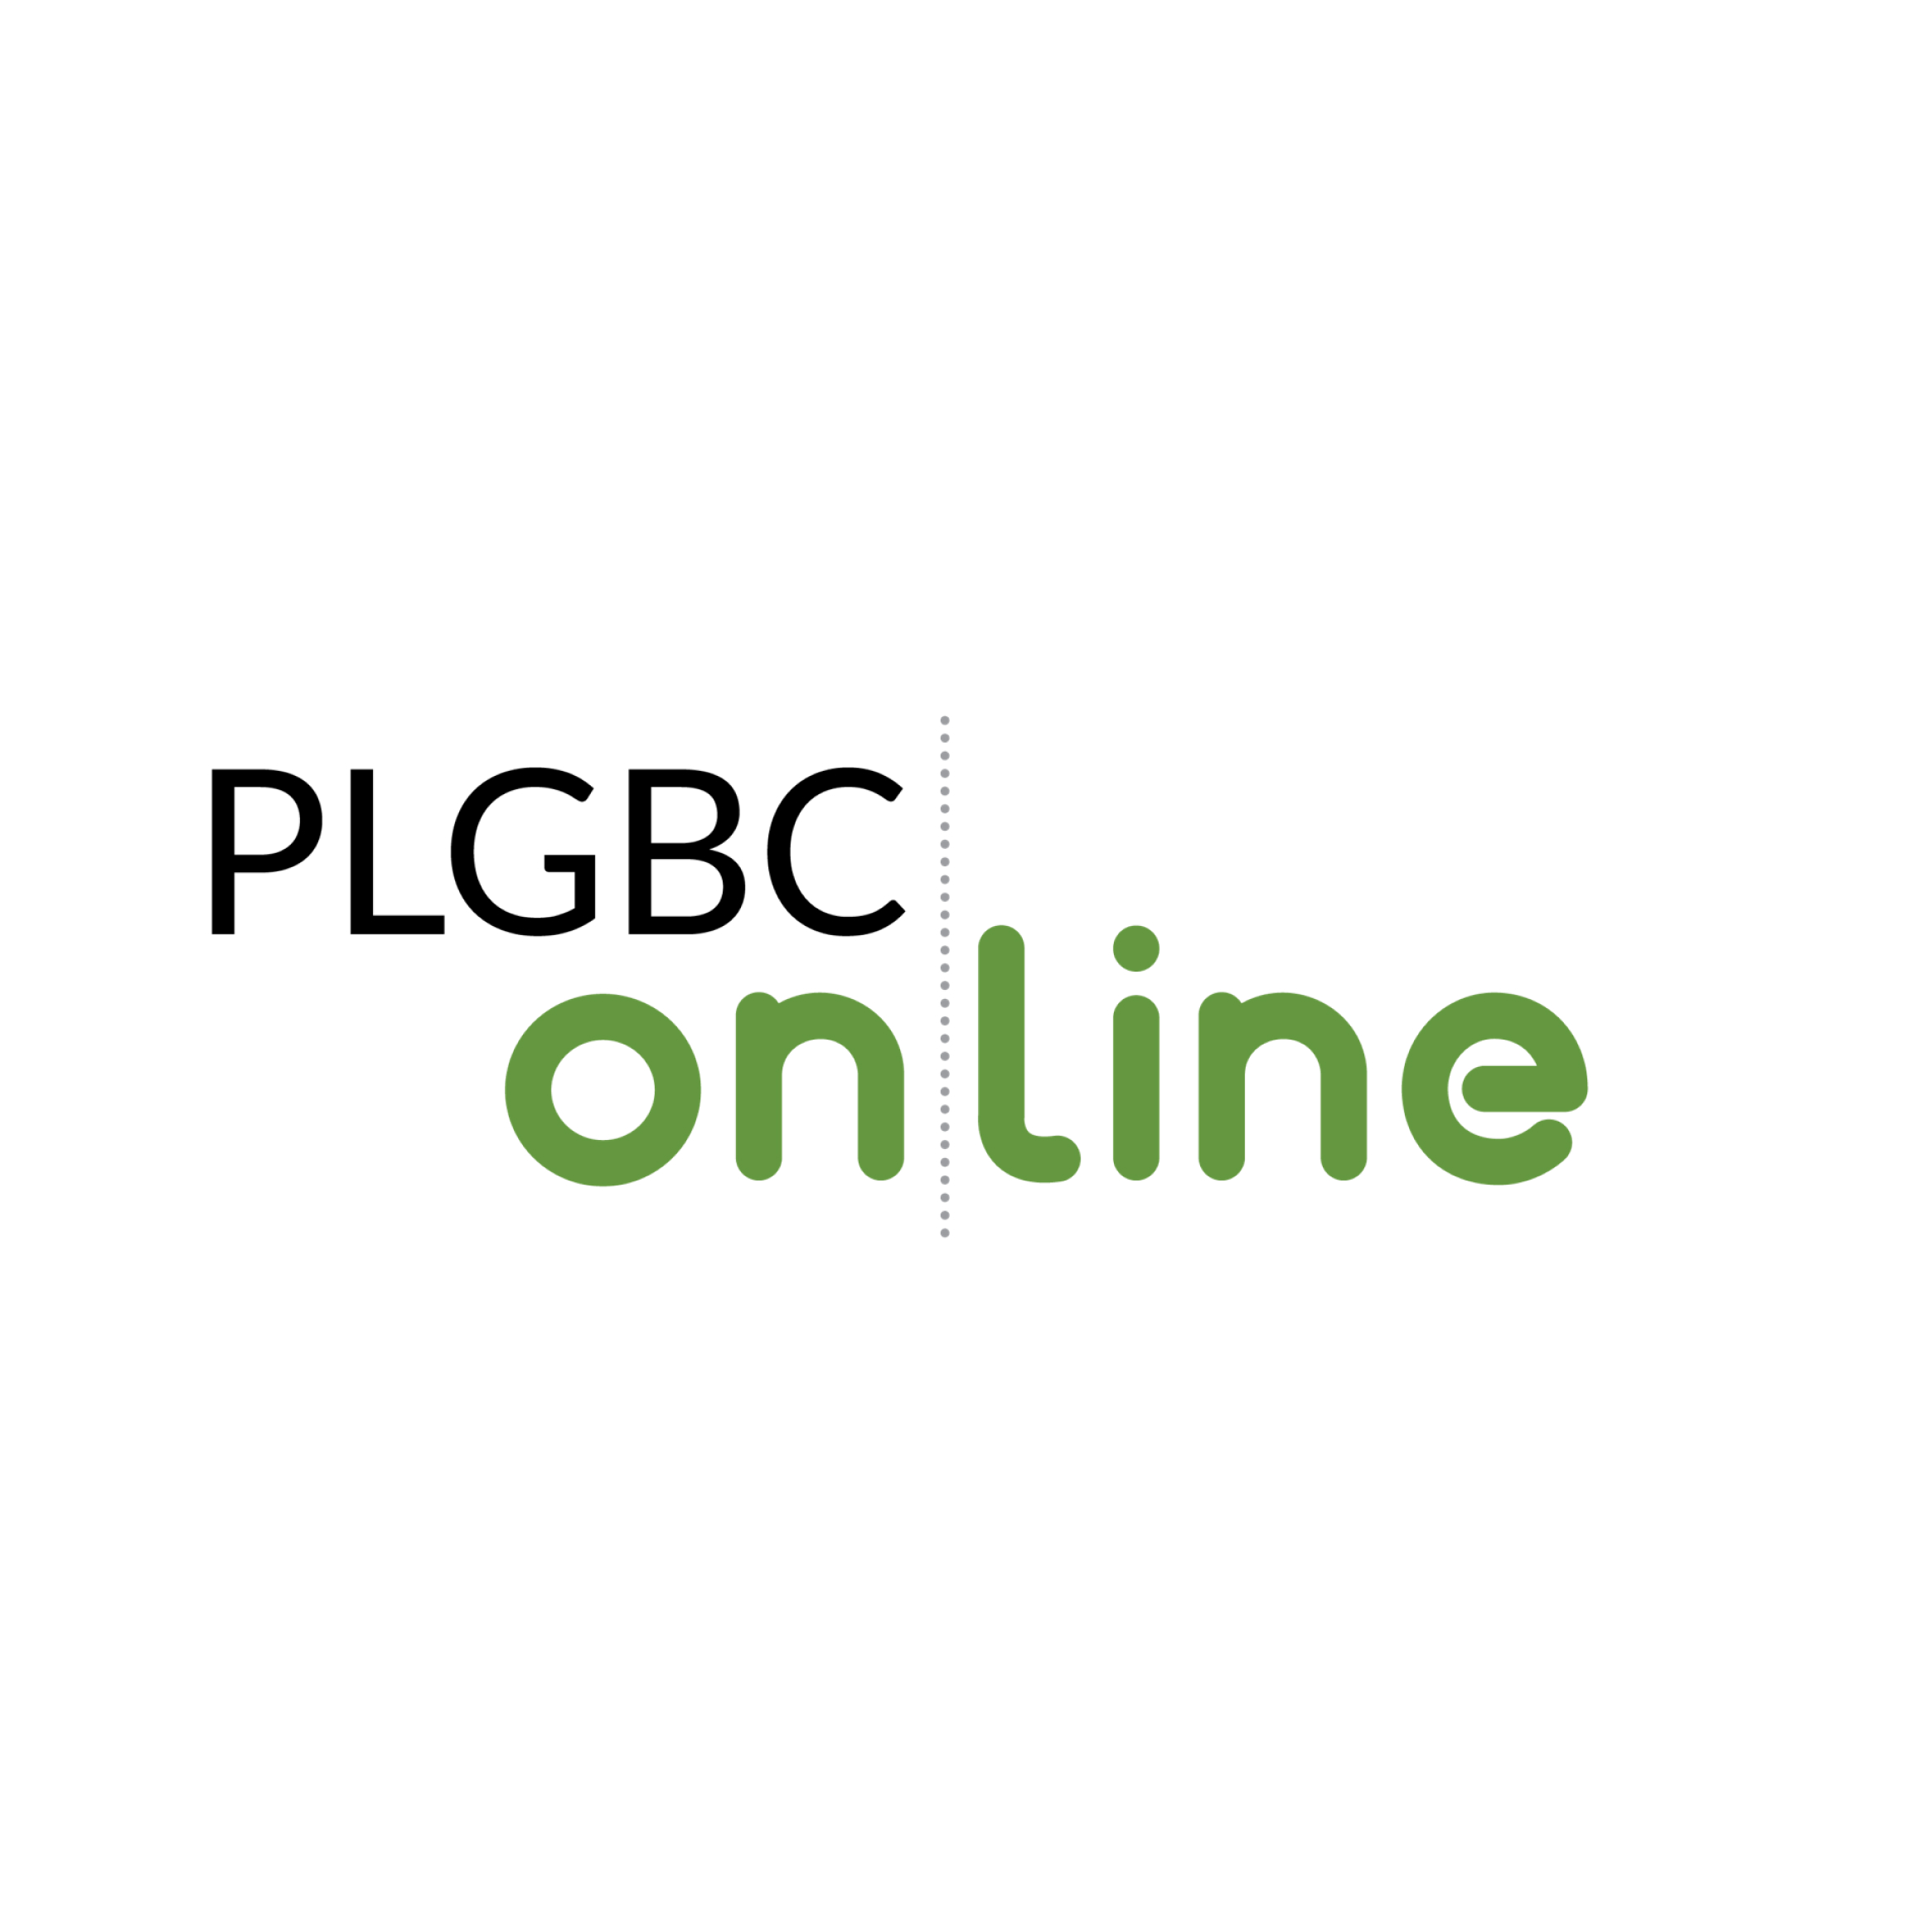 PLGBC_online: Czy nawierzchnie mogą być ekologiczne a jednocześnie estetyczne?